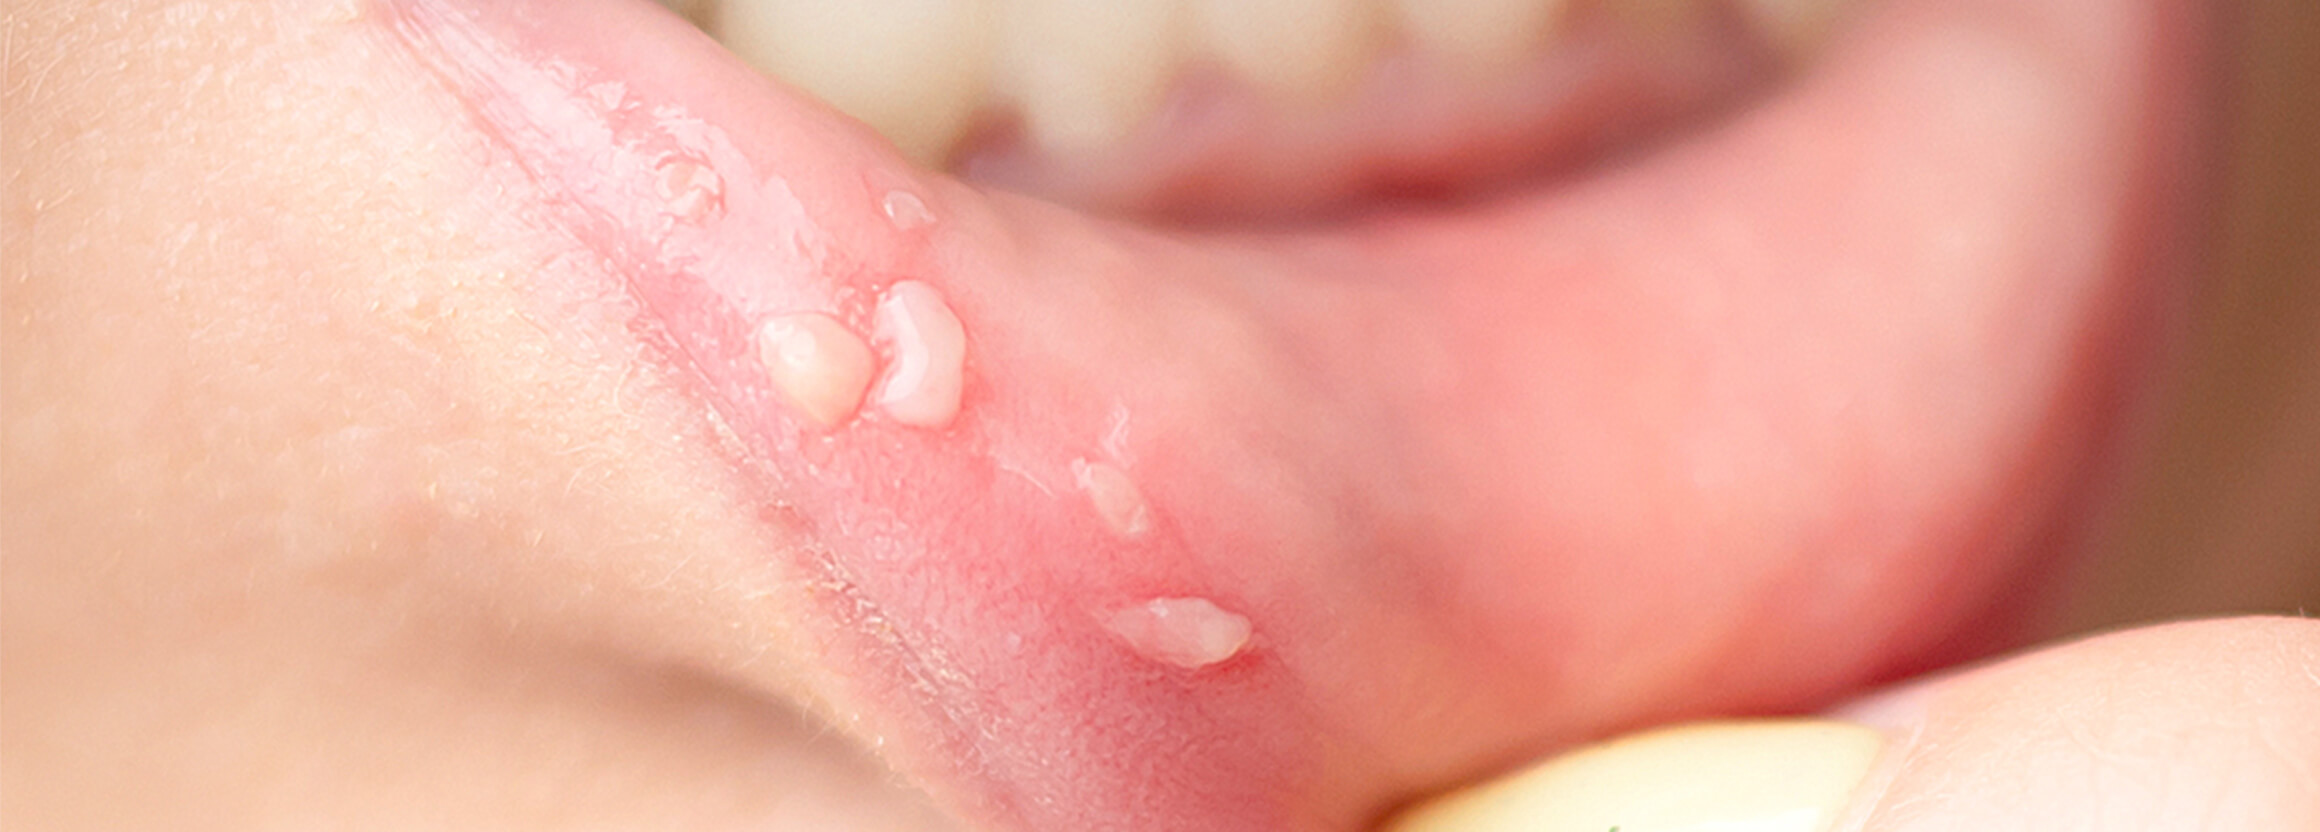 粘液嚢胞、脱臼歯、お子さまのケガにも対応可能